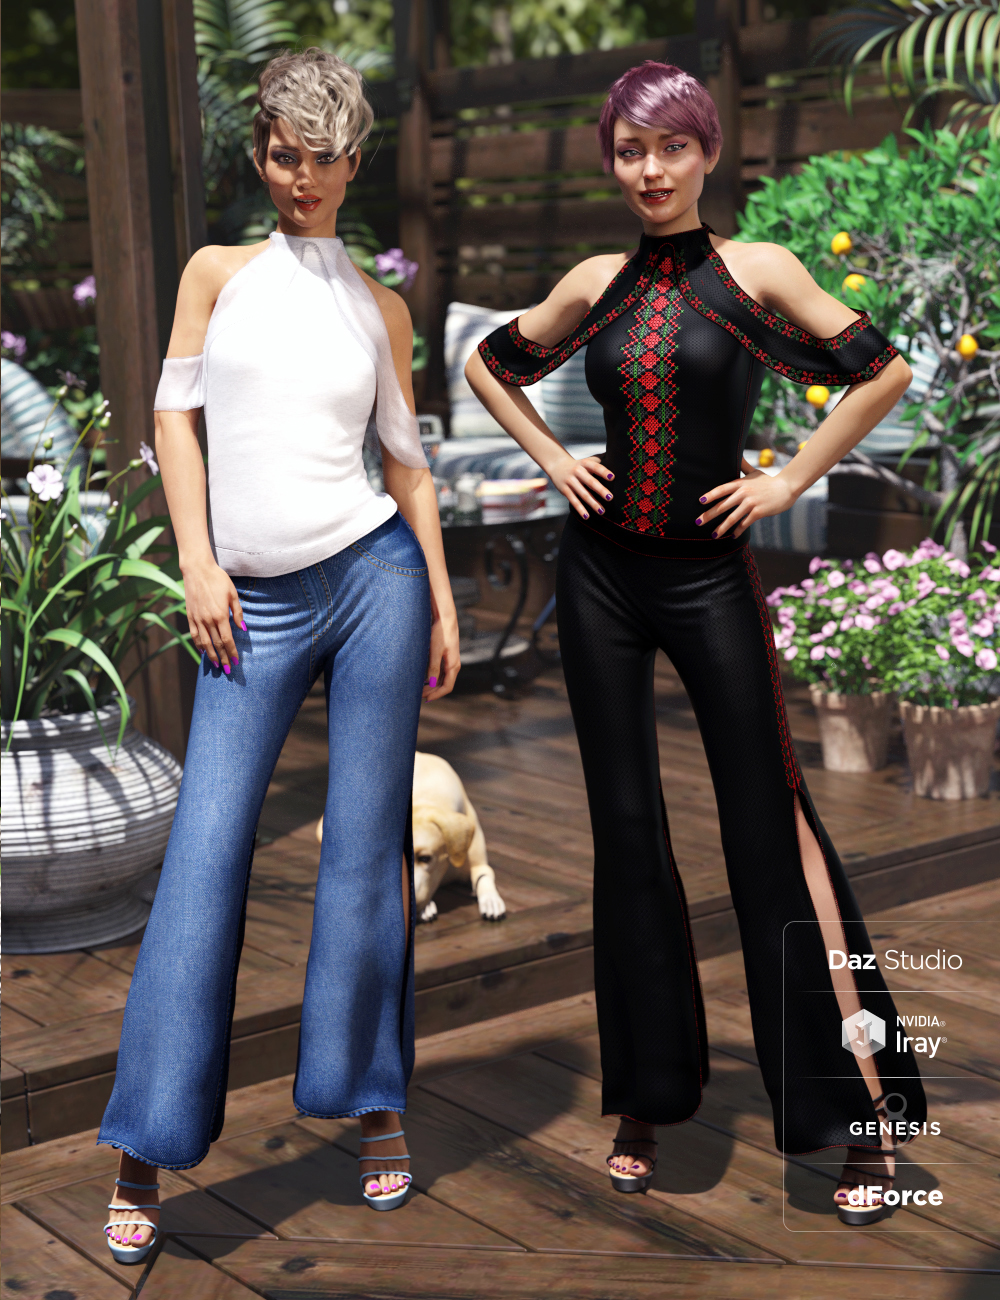 dForce Draped Pants Ensamble Textures by: Atenais, 3D Models by Daz 3D